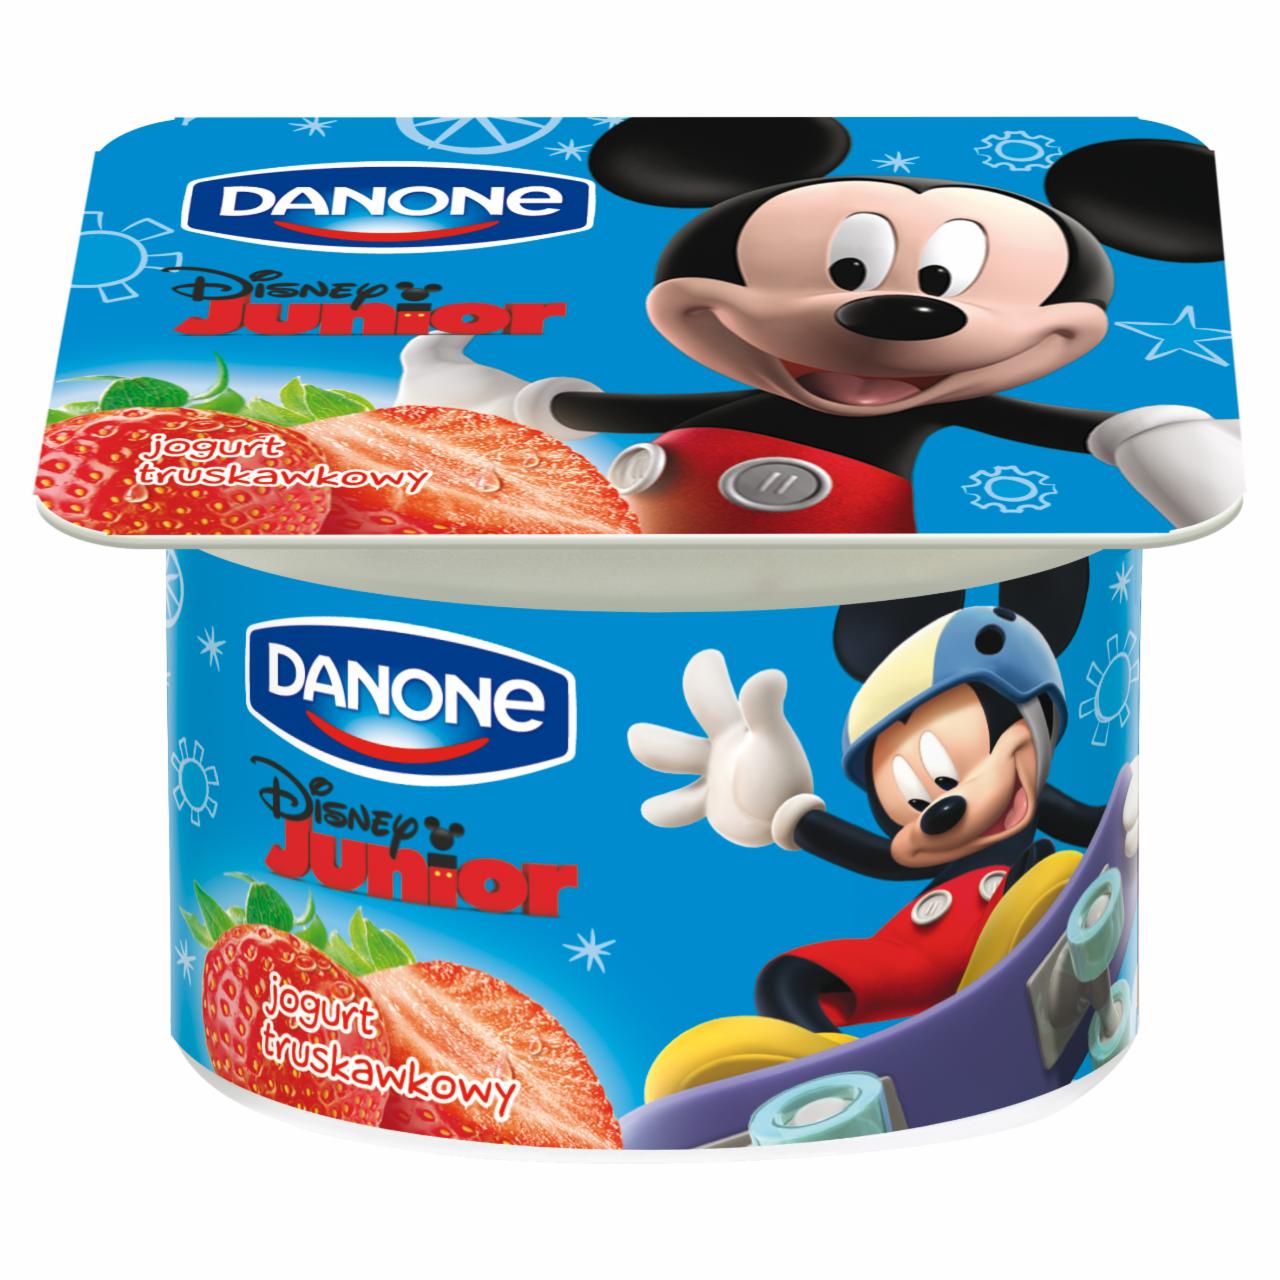 Zdjęcia - Danone Disney Junior Jogurt truskawkowy 120 g